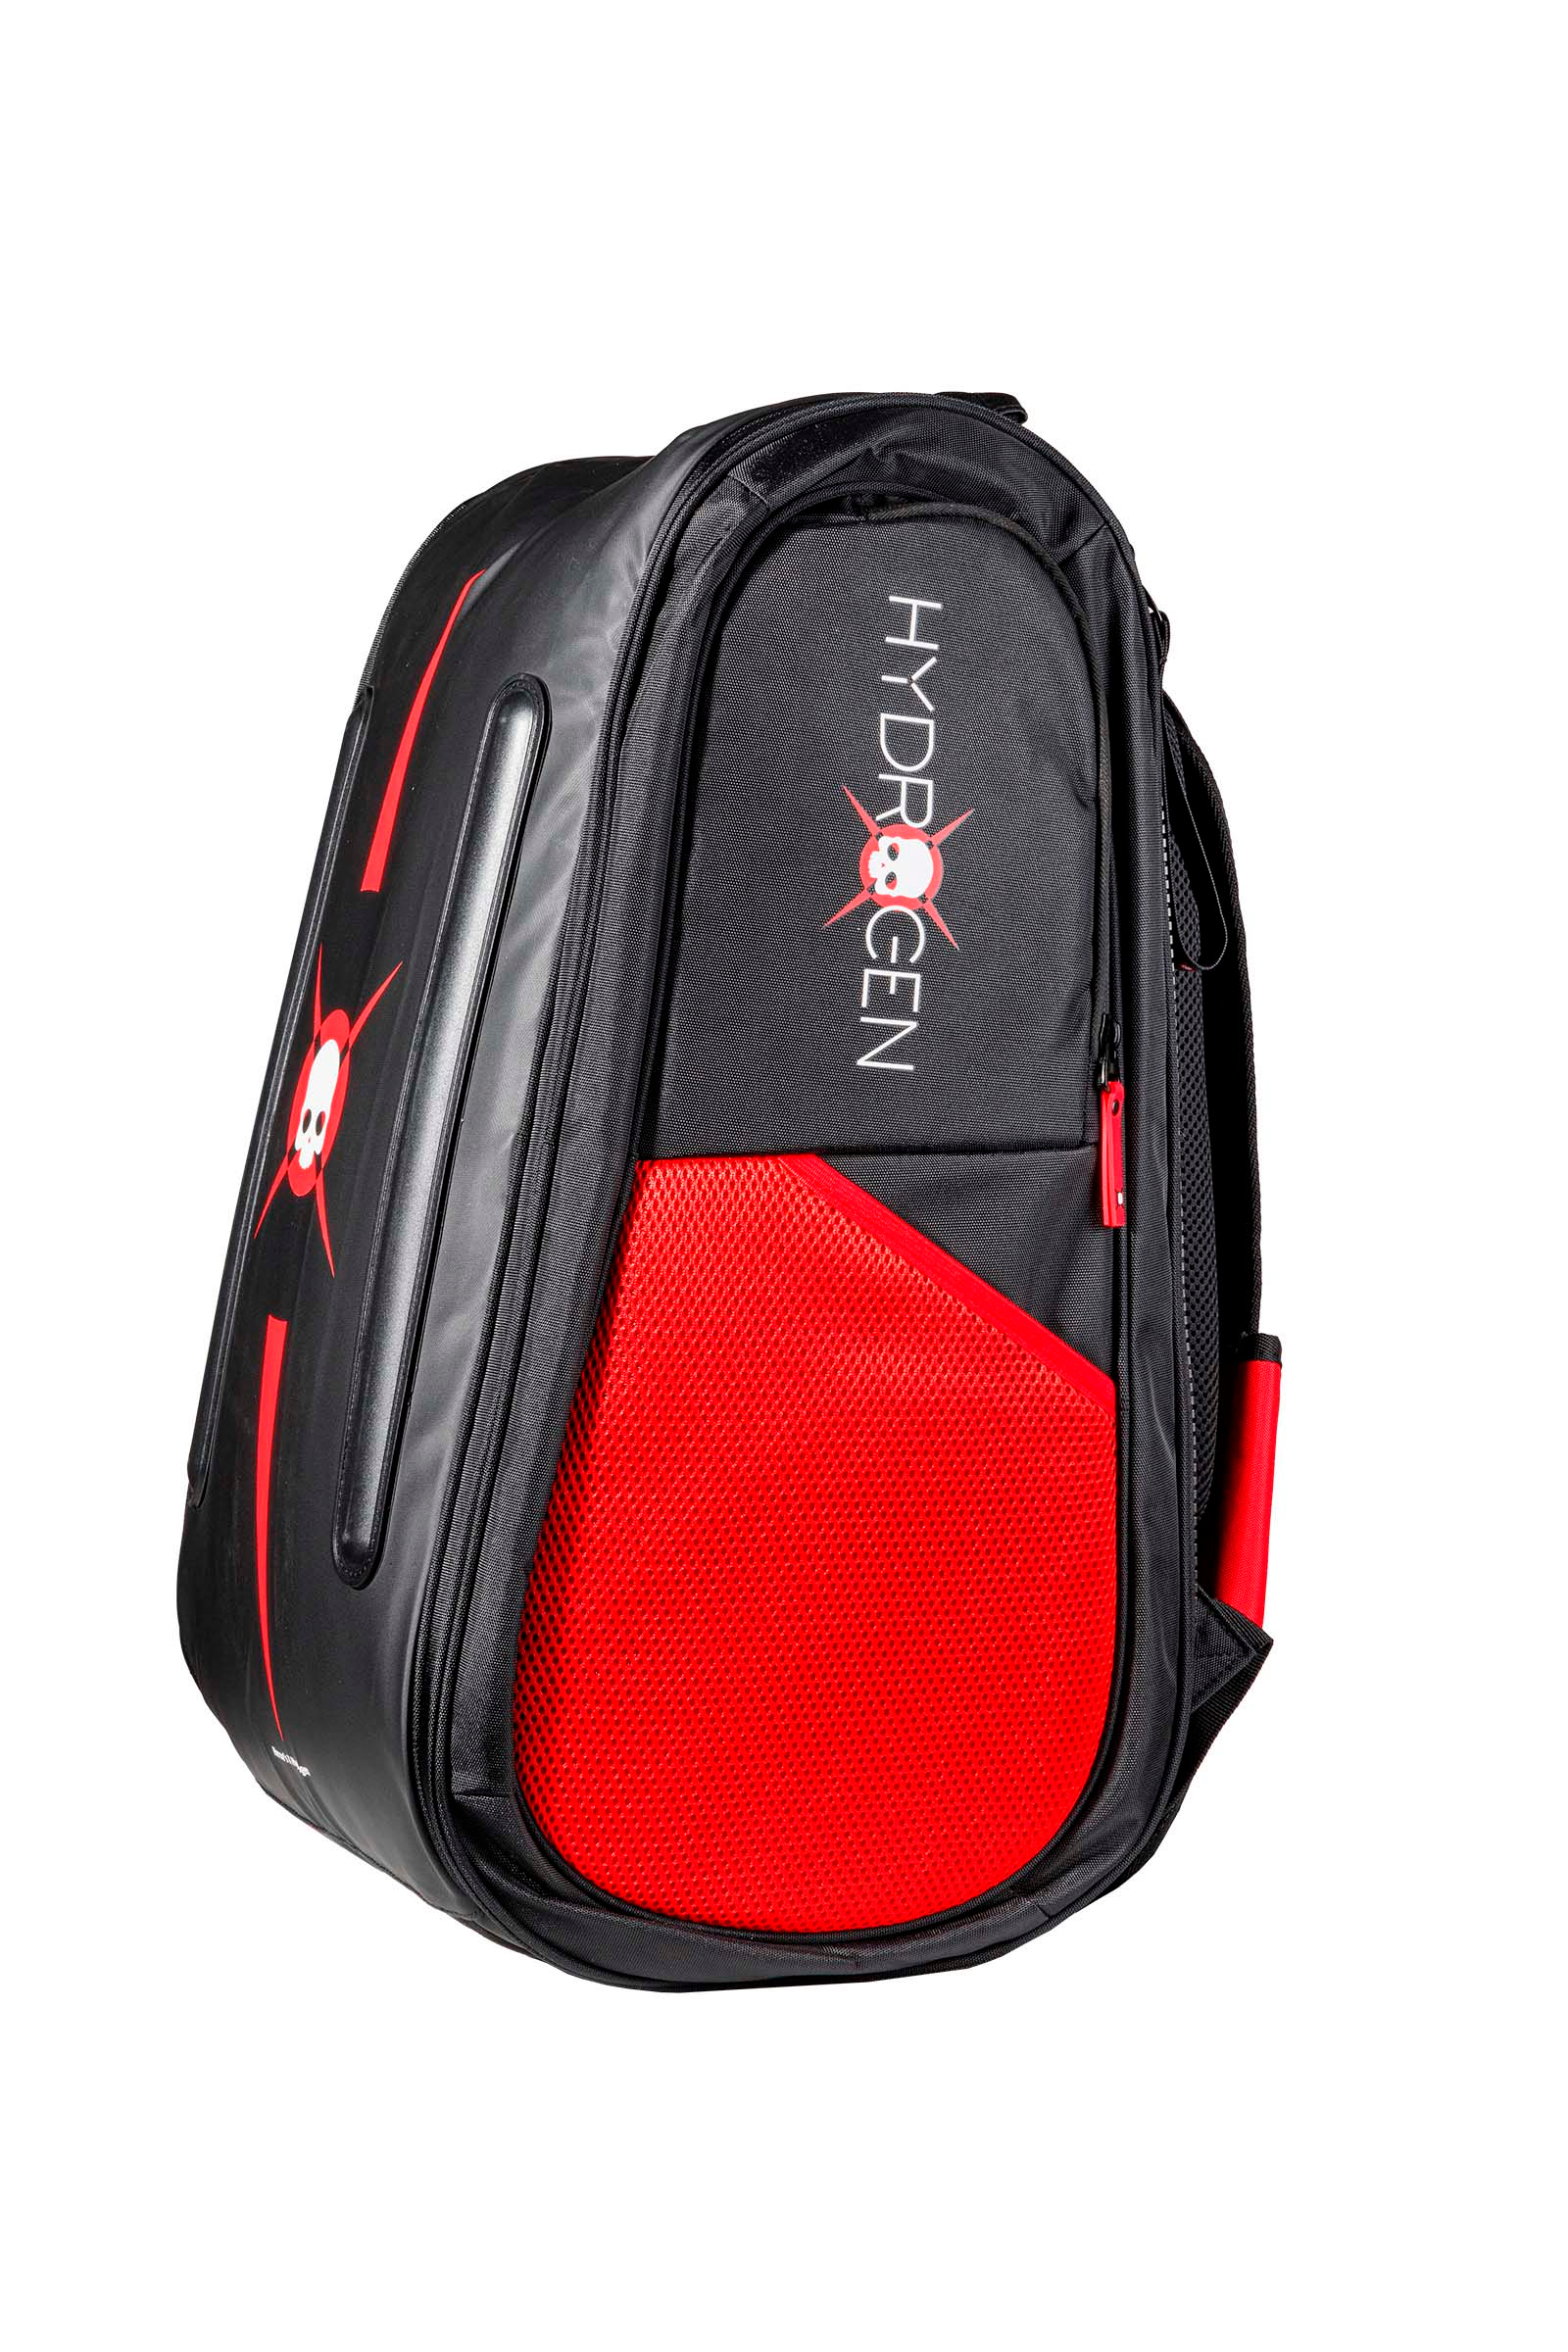 BORSONE THUNDER - BLACK,RED - Abbigliamento sportivo | Hydrogen